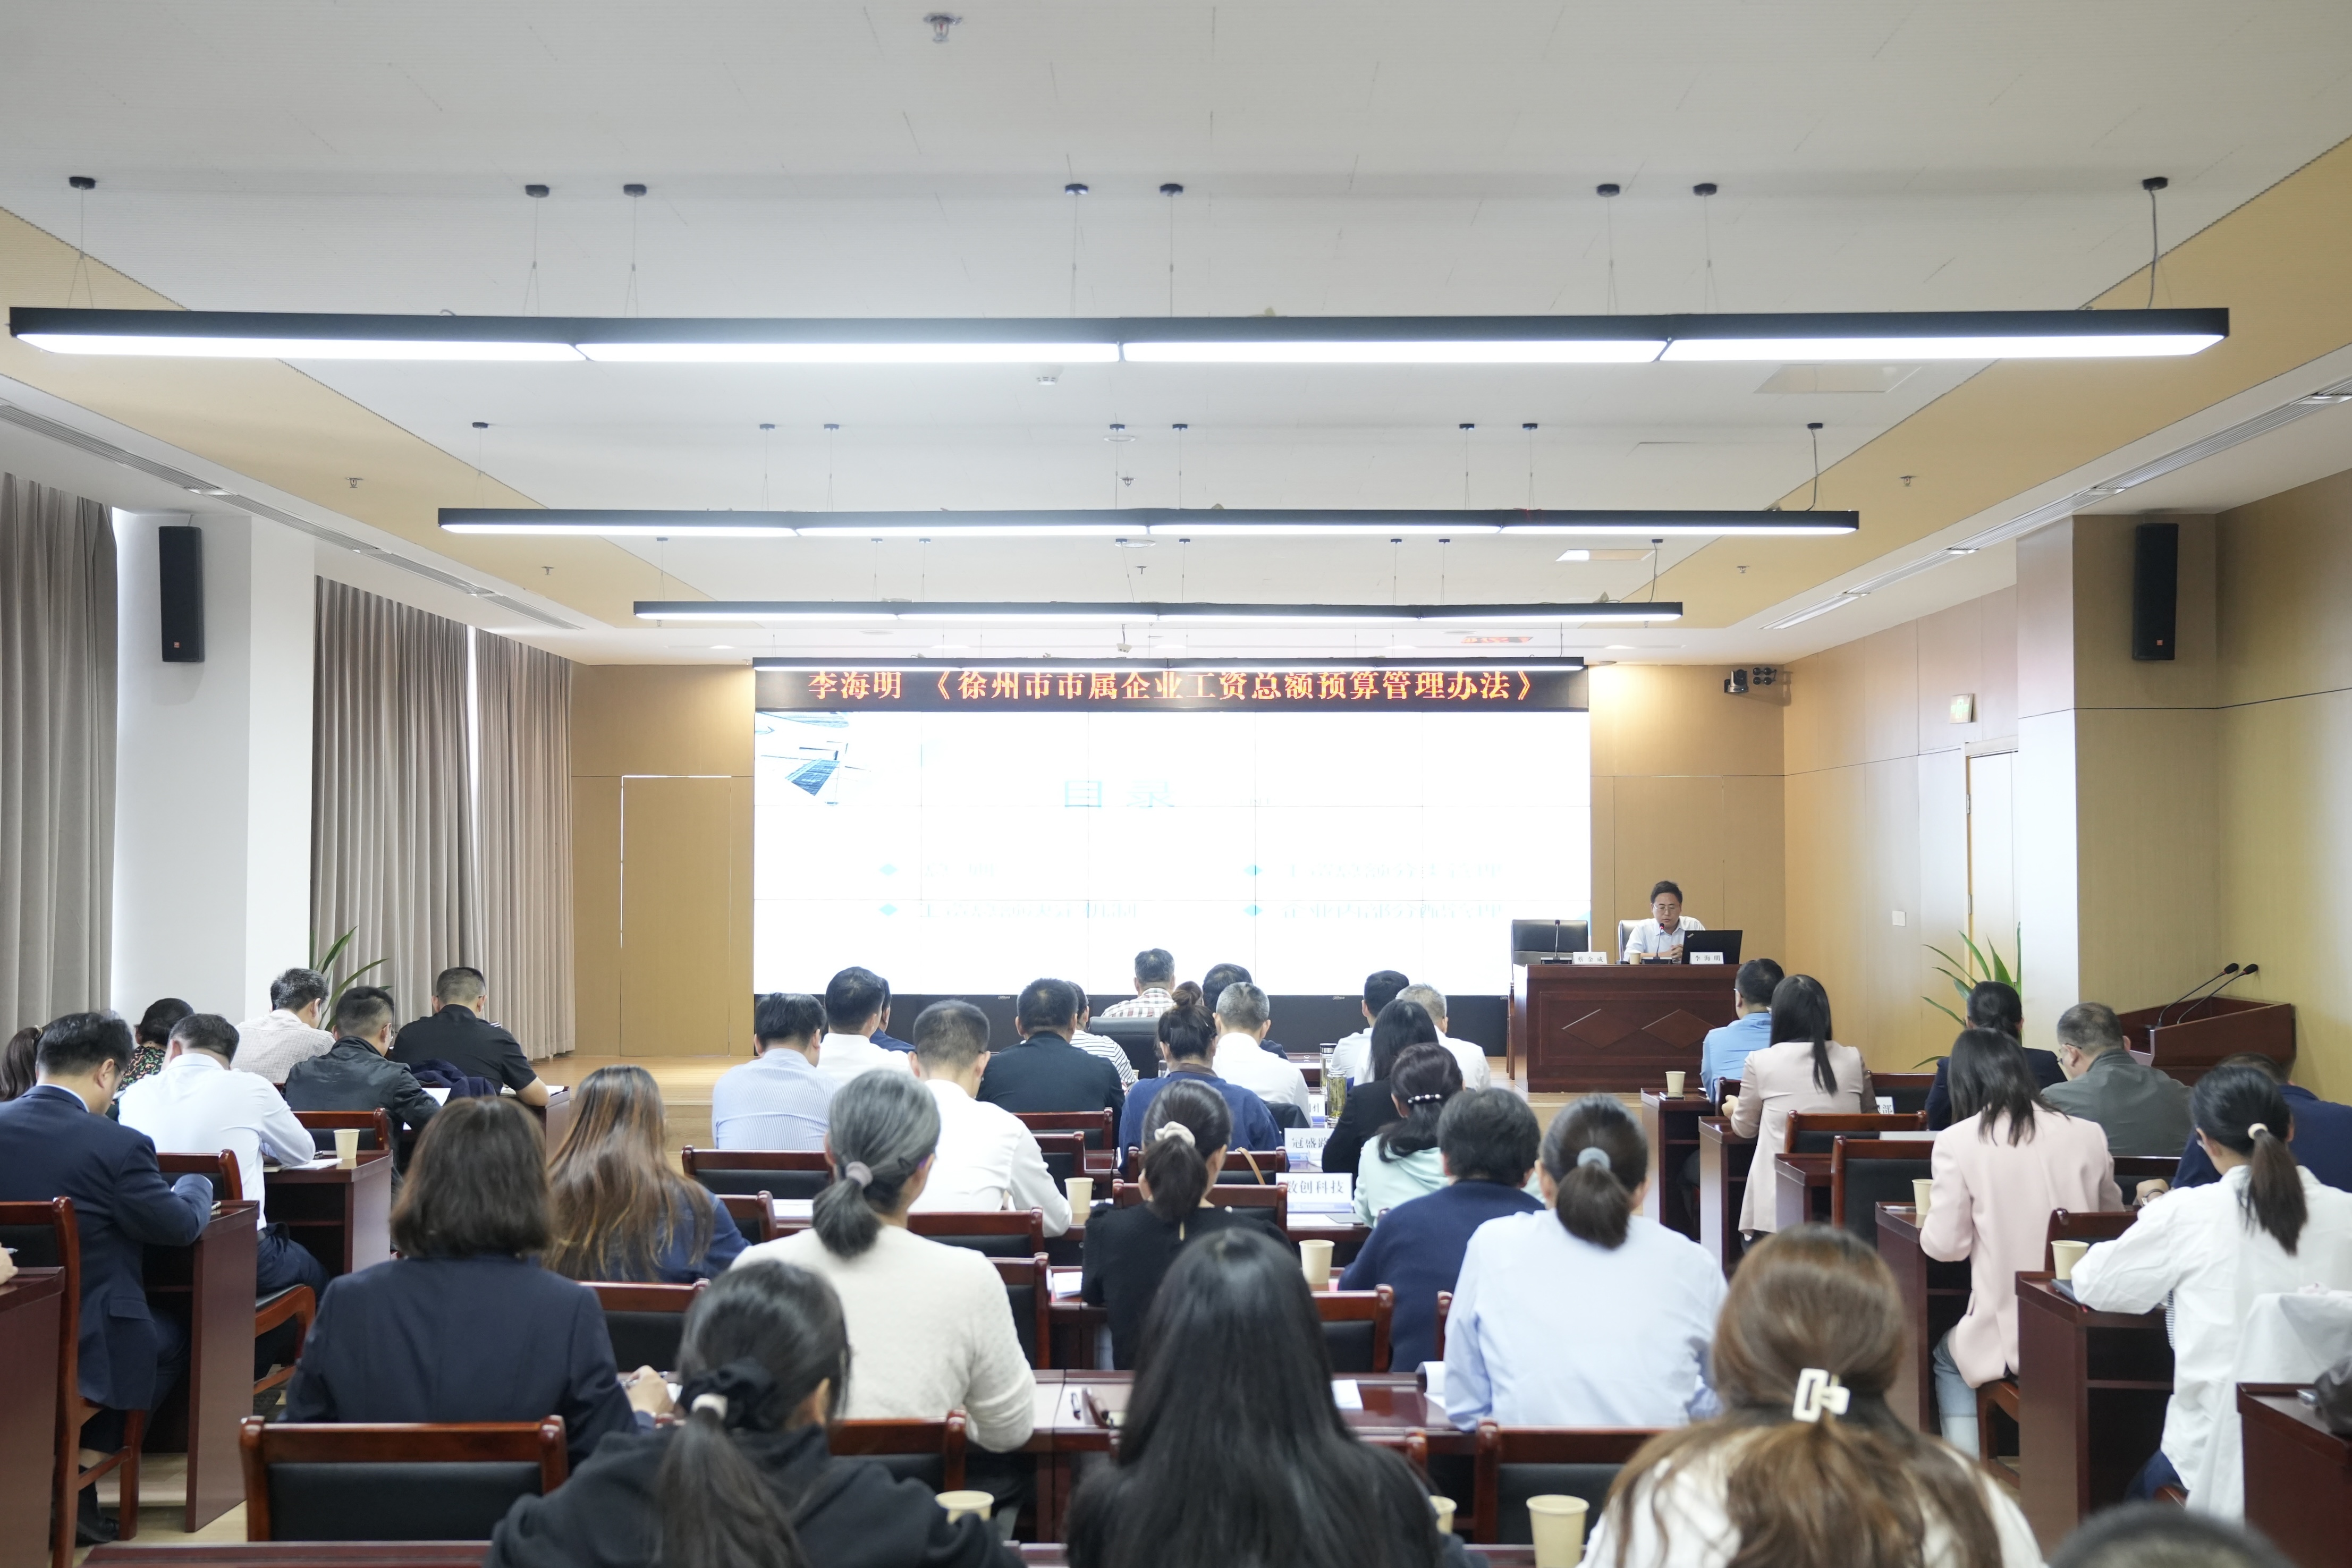 尊龙凯时集团举办《徐州市属企业人为总额预算治理步伐》培训